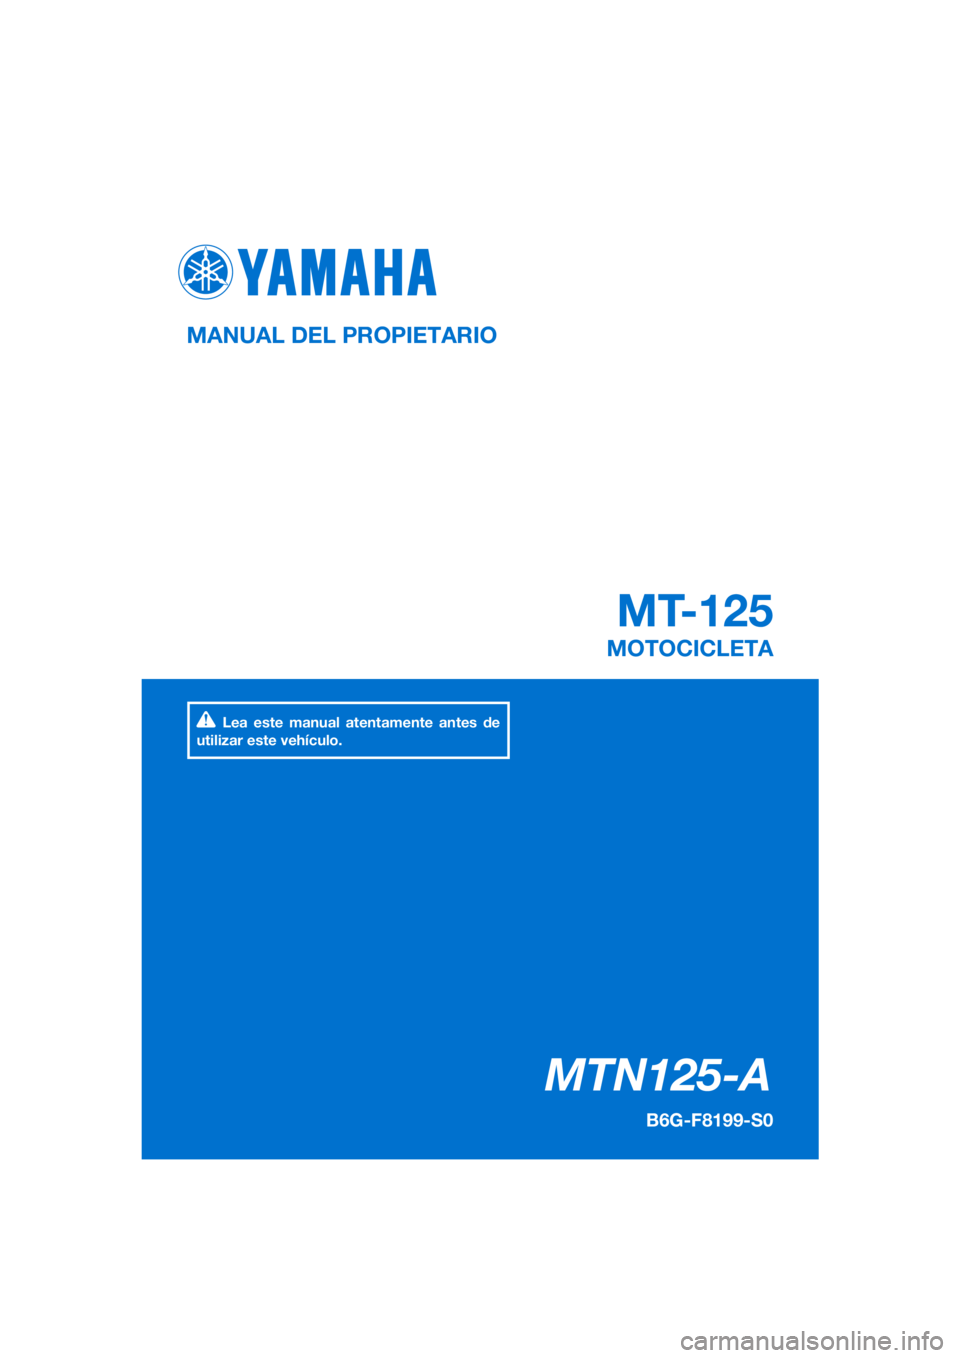 YAMAHA MT-125 2020  Manuale de Empleo (in Spanish) PANTONE285C
MTN125-A
MT-125
MANUAL DEL PROPIETARIO
B6G-F8199-S0
MOTOCICLETA
Lea este manual atentamente antes de 
utilizar este vehículo.
[Spanish  (S)] 